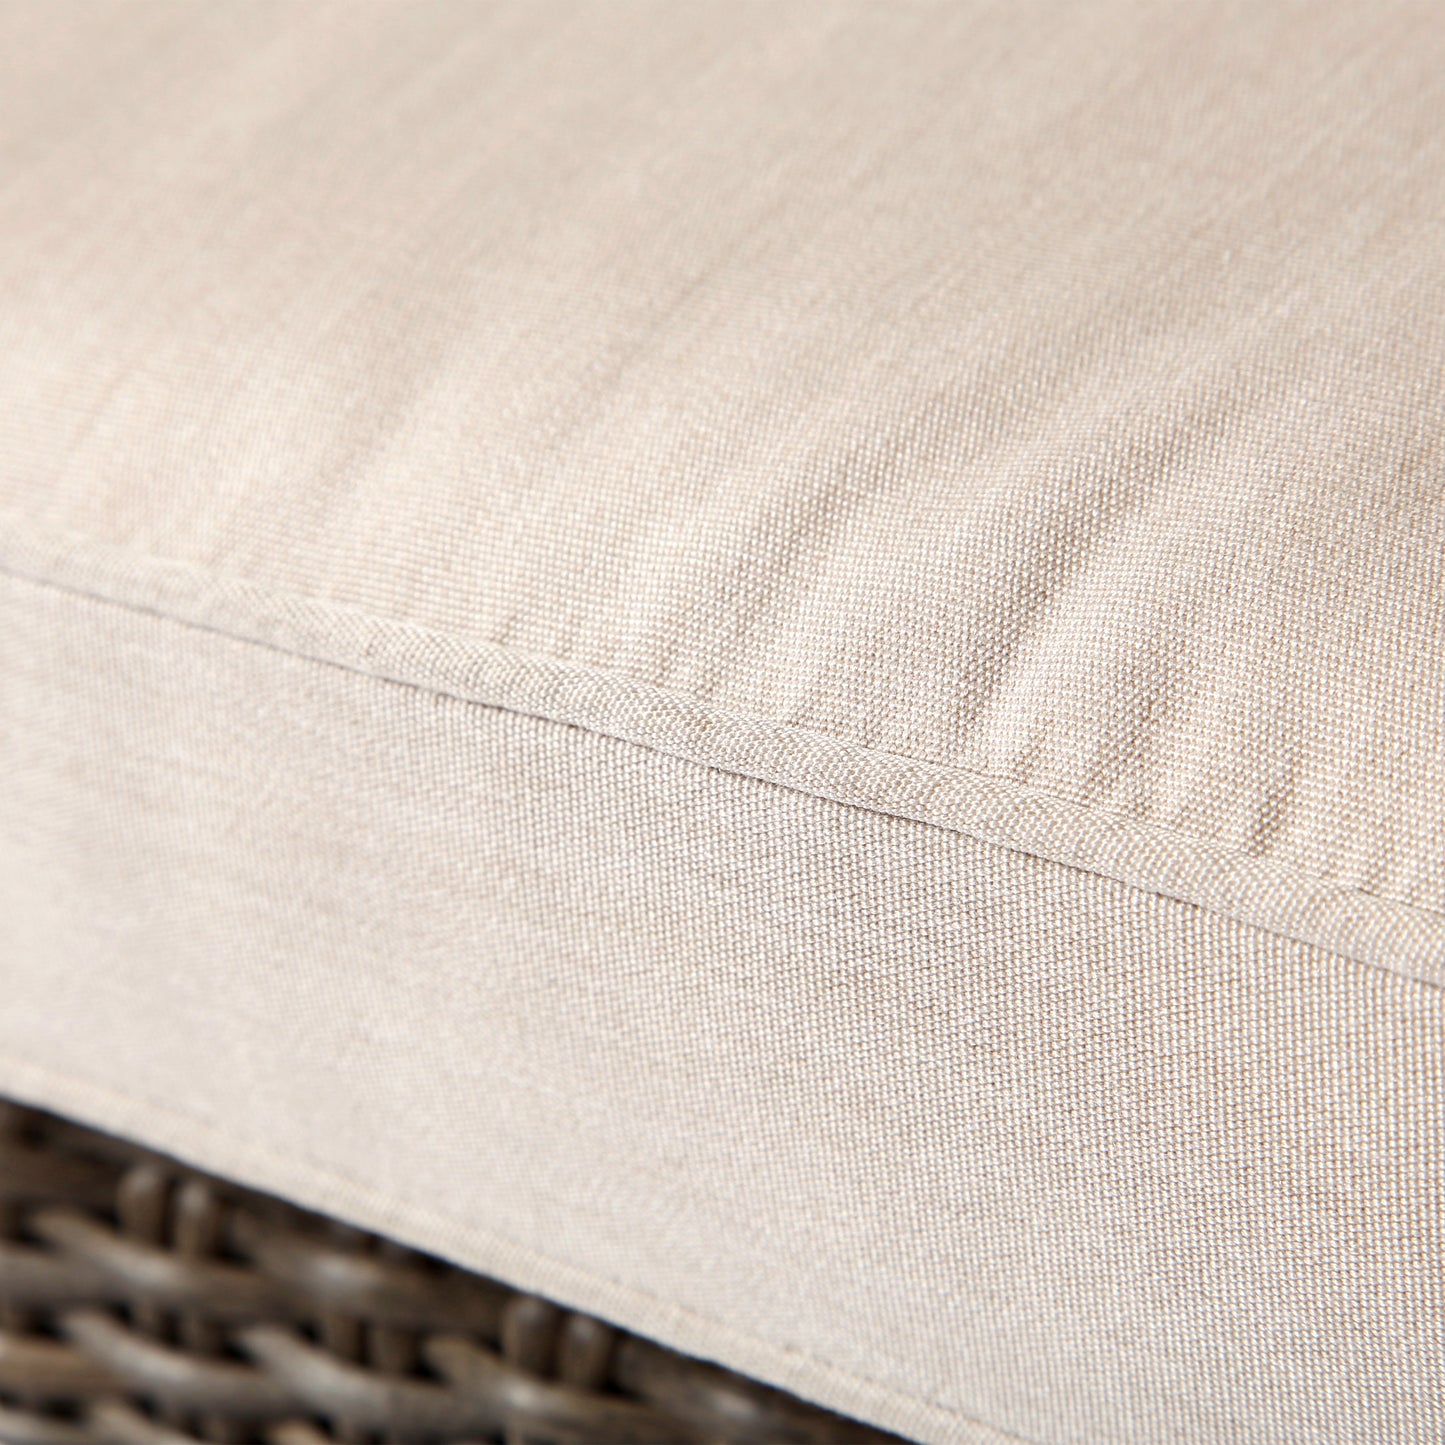 Oak Grove Dining Chair Canvas Flax Cushion Detail, image 5